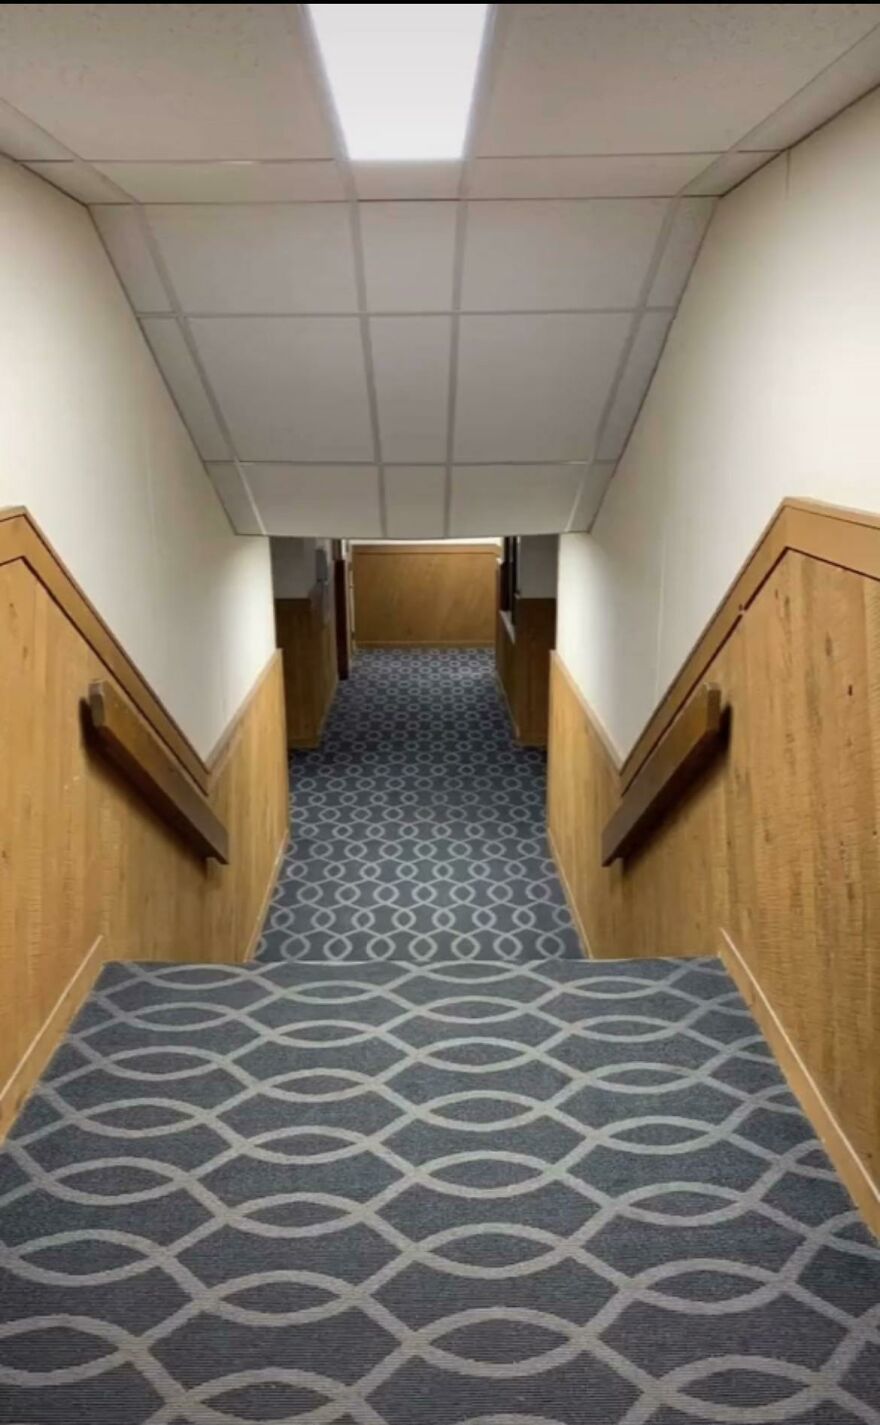 Why Does This Hallway Seem So Familiar?